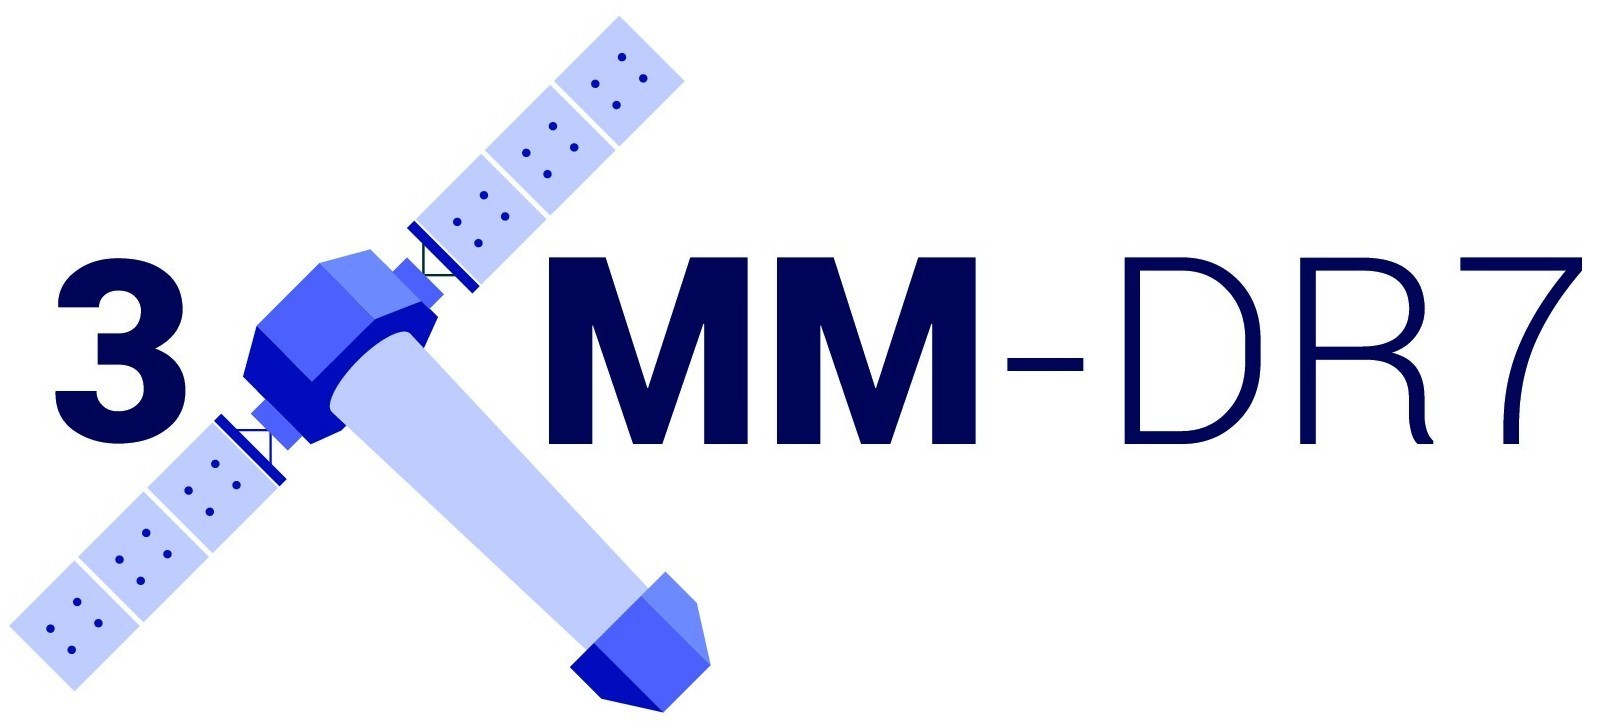 3XMM-DR6 logo